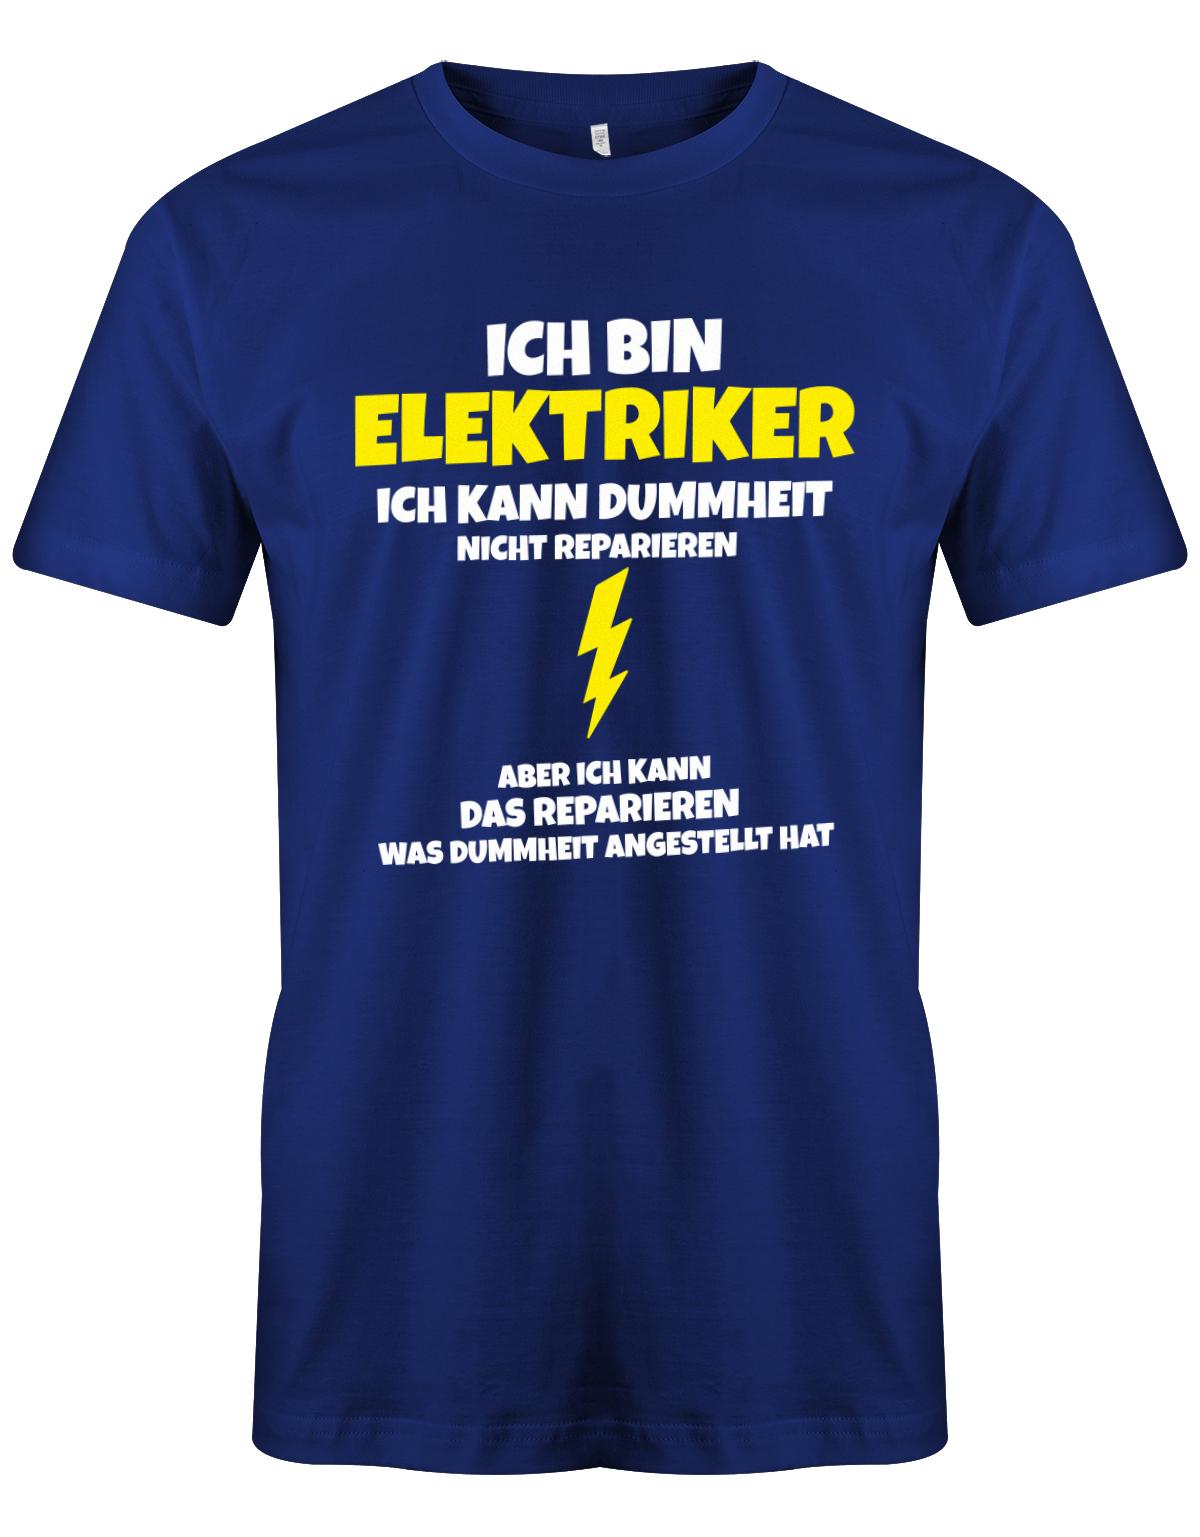 Elektriker Shirt - Ich bin Elektriker, ich kann Dummheit nicht reparieren. Aber ich kann das reparieren, was Dummheit angestellt hat. Royalblau